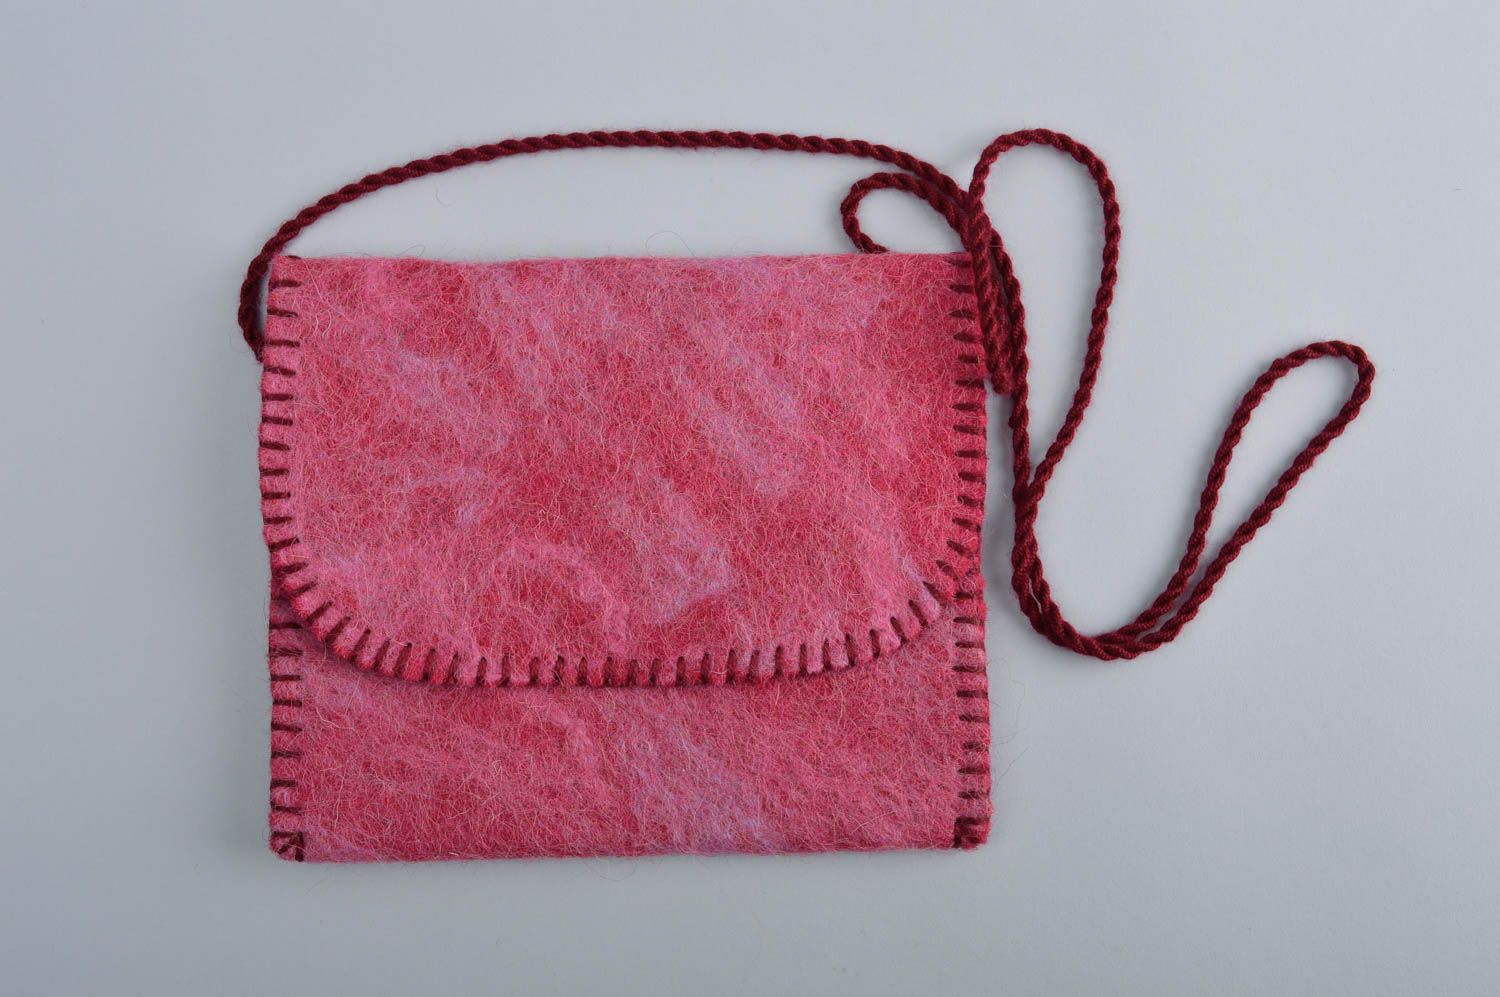 Сумка ручной работы сумка из войлока через плечо розовая сумка валяние фото 2